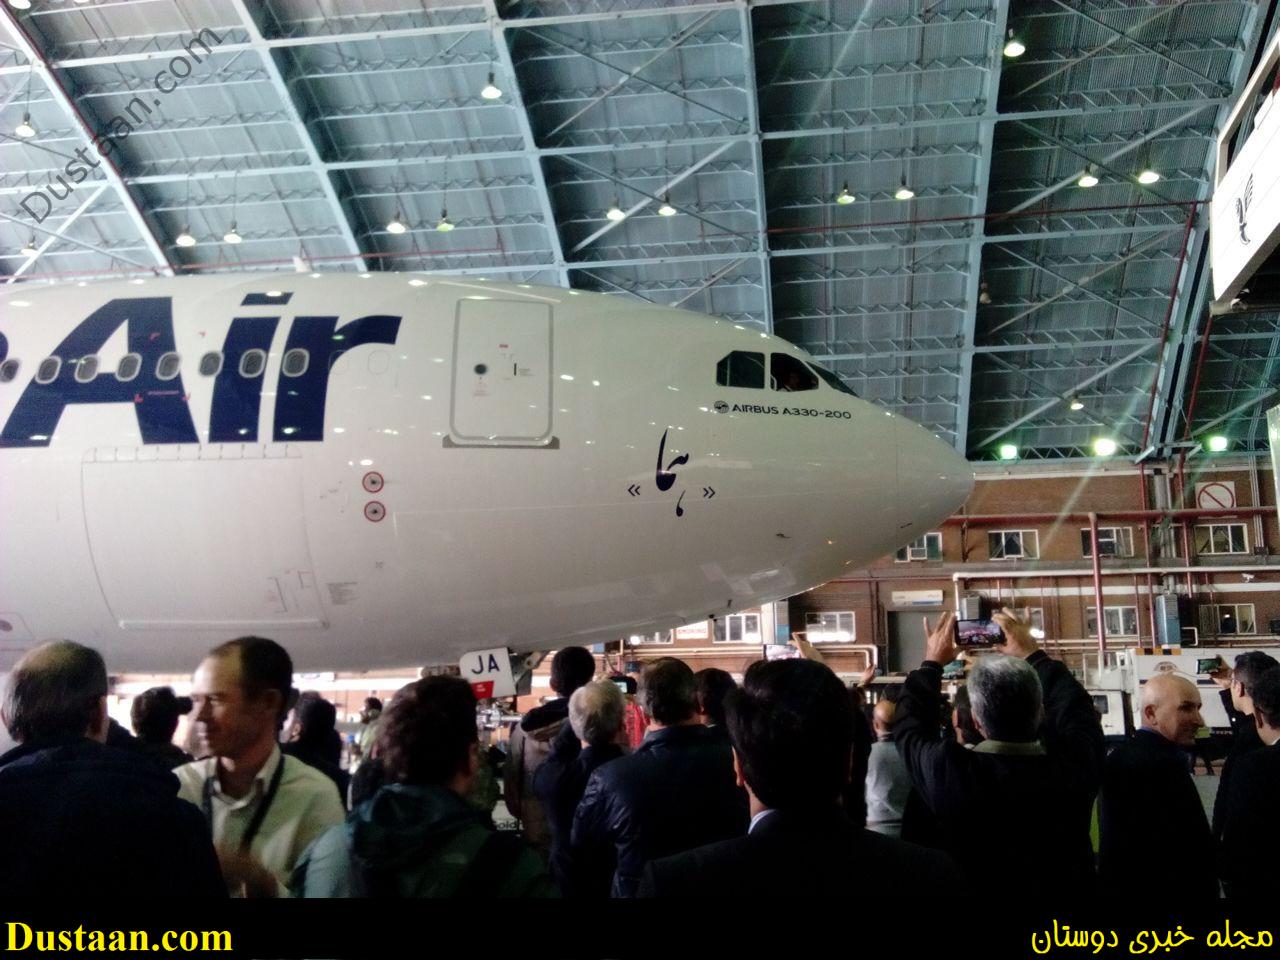 www.dustaan.com-dustaan.com-تصاویری از لحظه ورود هواپیمای جدید ایران&#160;به آشیانه